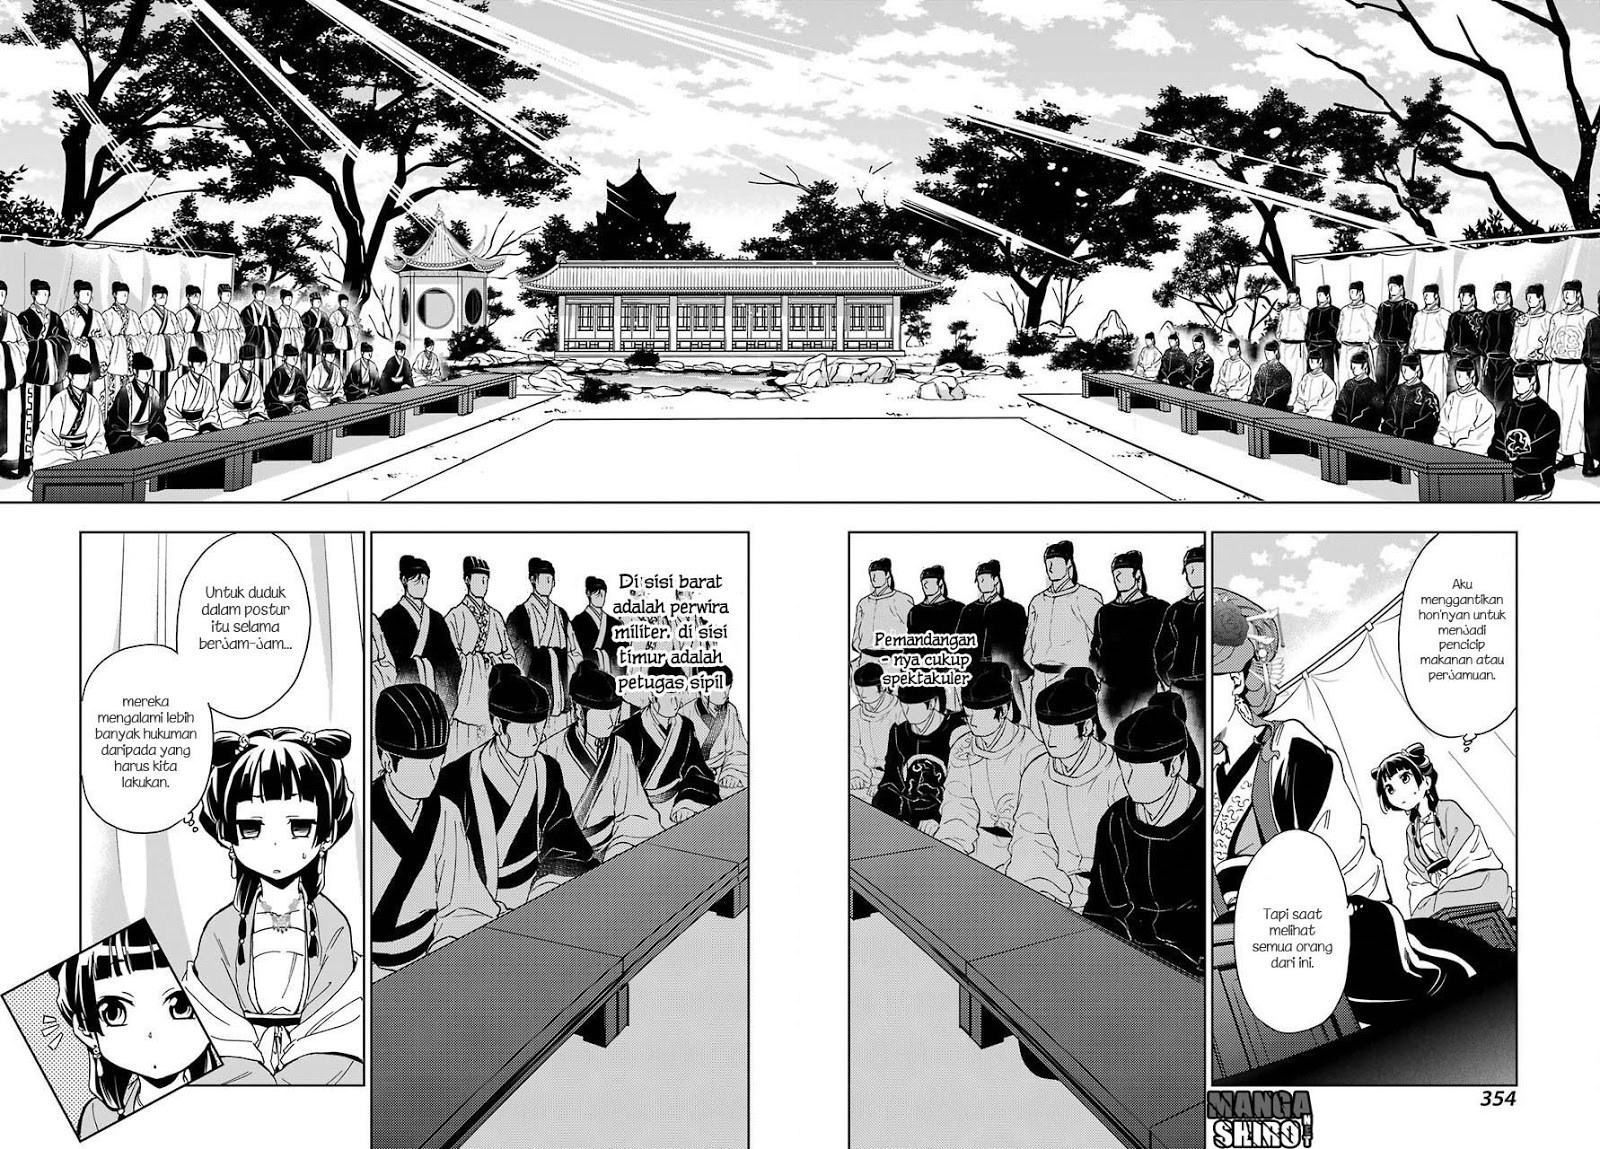 Kusuriya no Hitorigoto Chapter 07